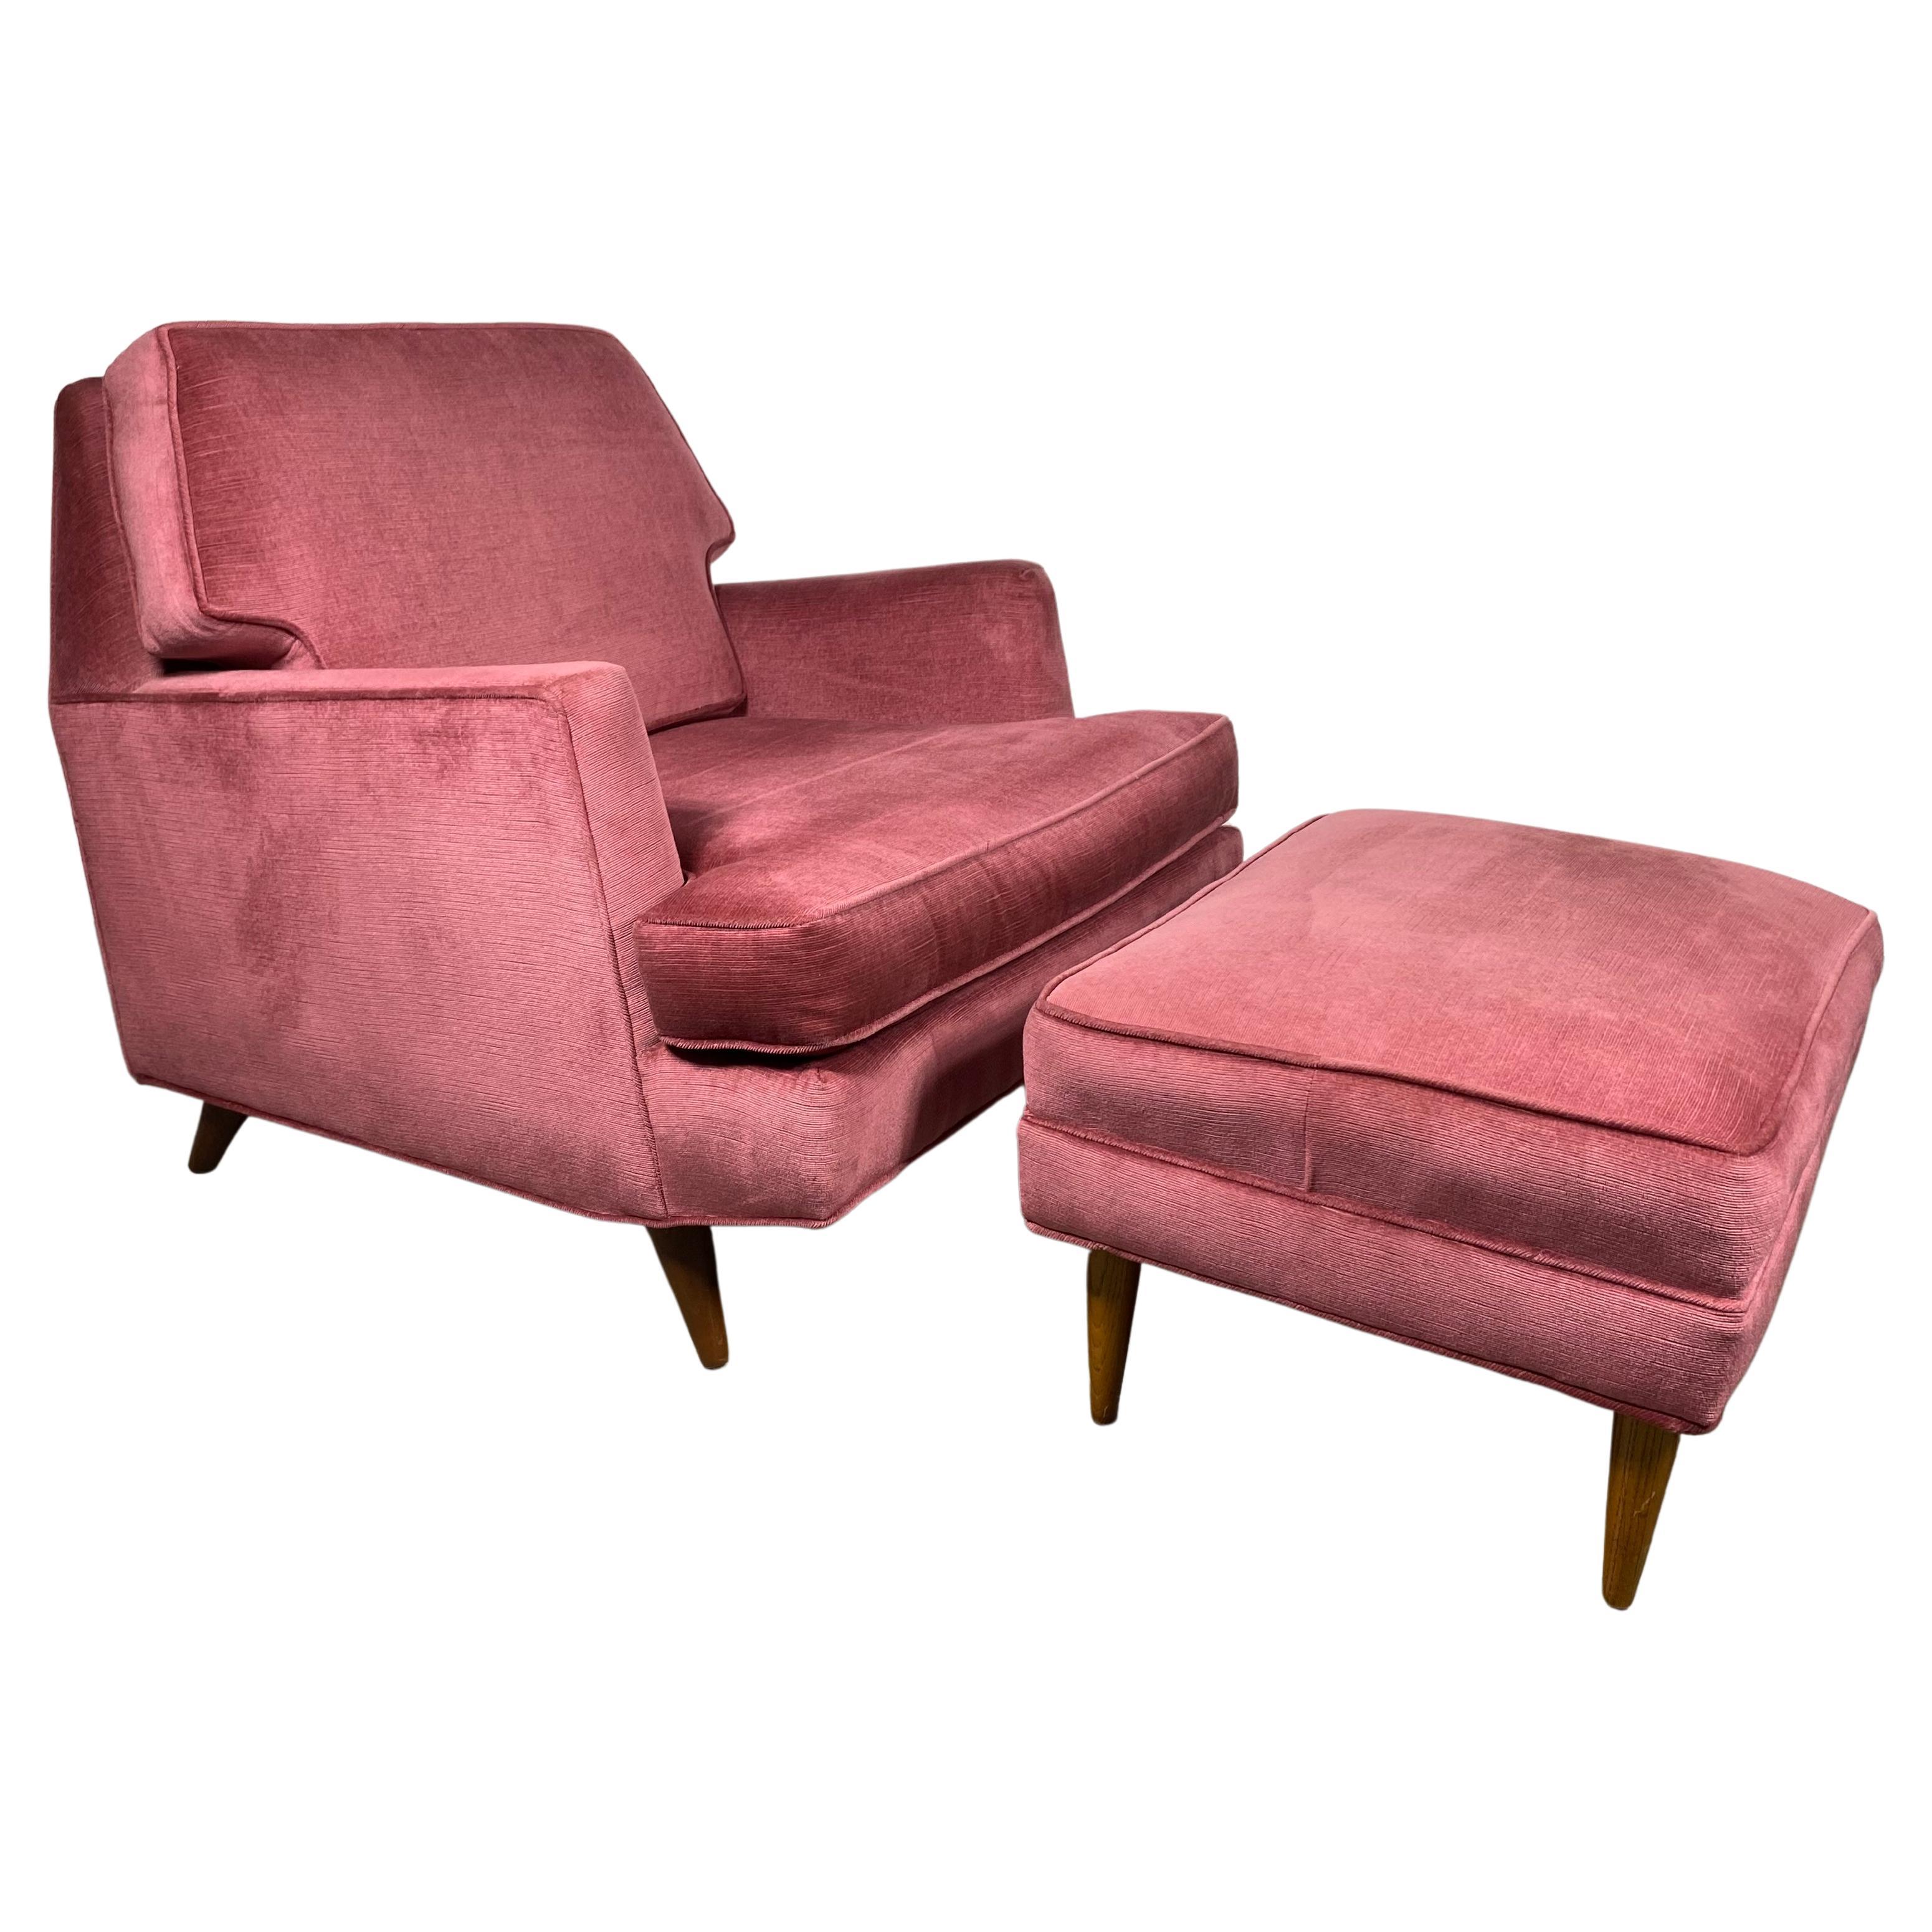 Stunning Modernist Lounge Chair & Ott Oman by Roger Springer for Dunbar For Sale